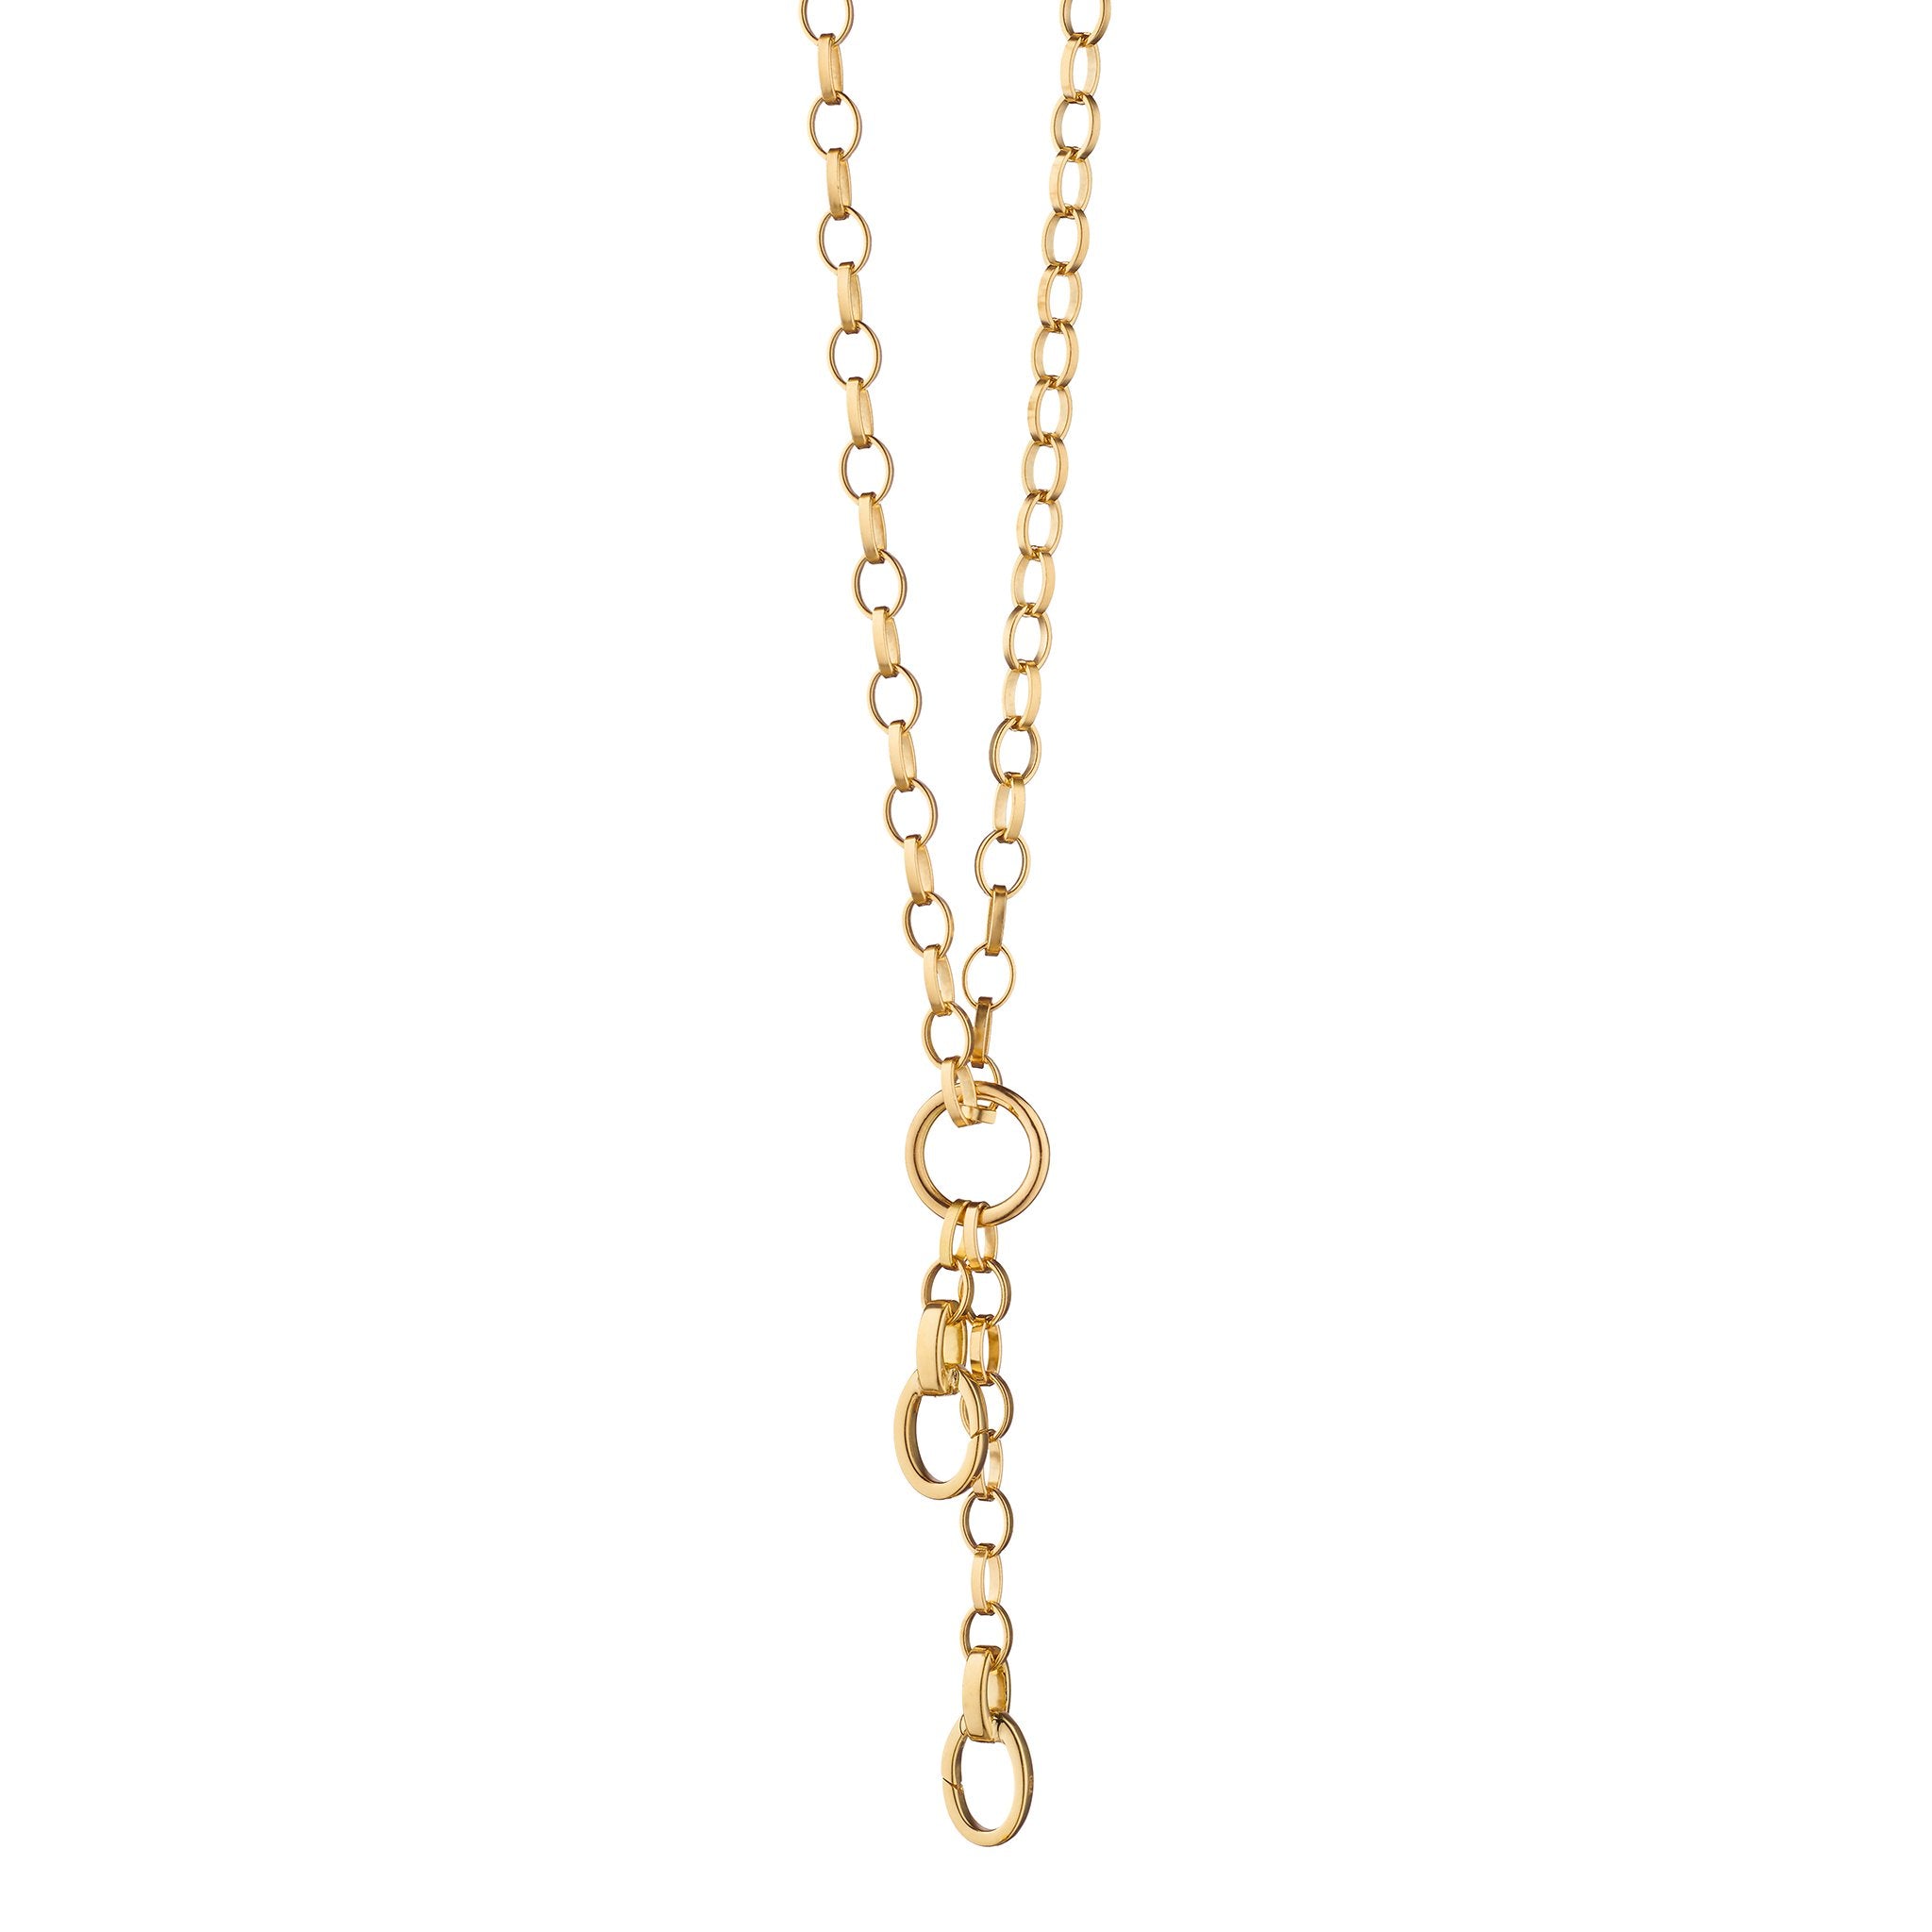 14k Gold Glowing Sun Charm Necklace – FERKOS FJ